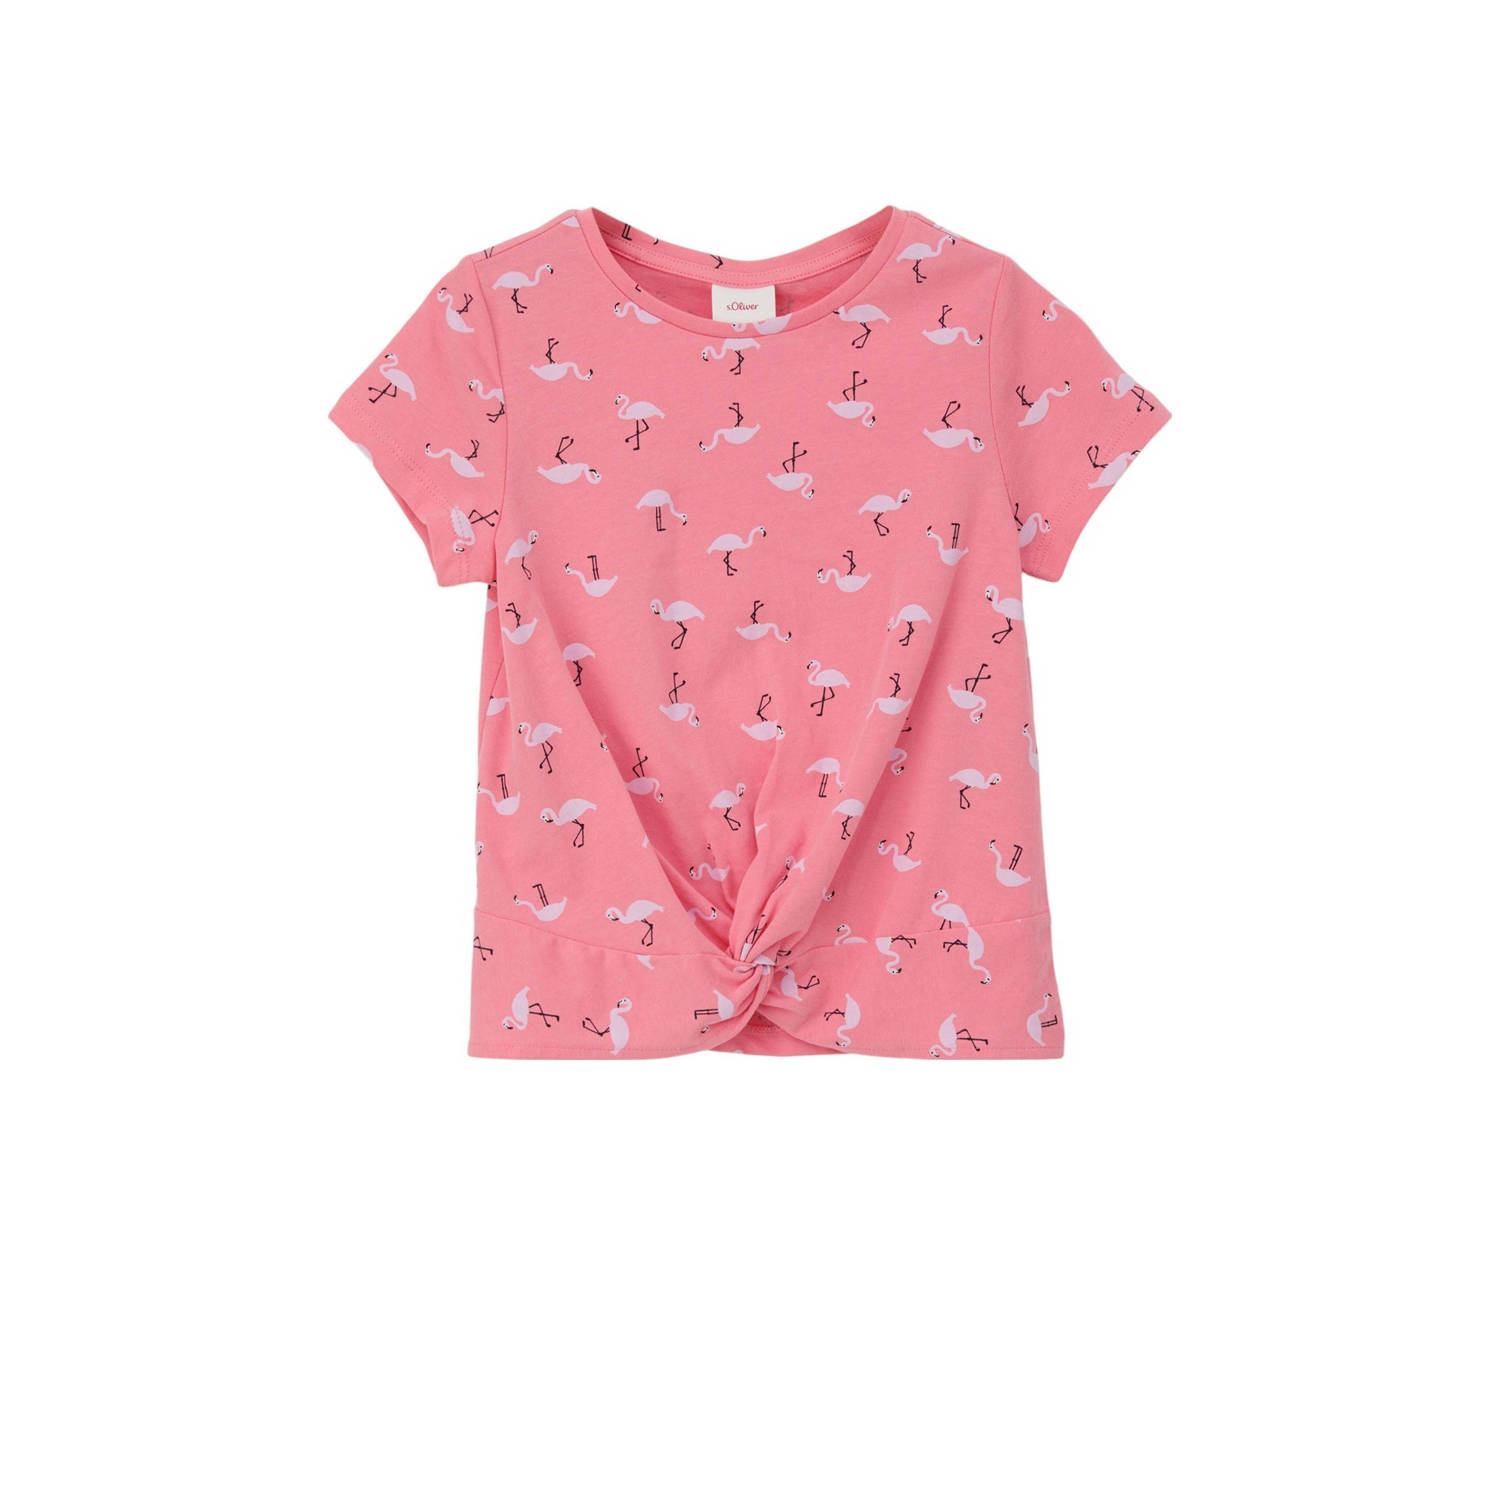 S.Oliver T-shirt met all over print roze Meisjes Katoen Ronde hals All over print 128 134